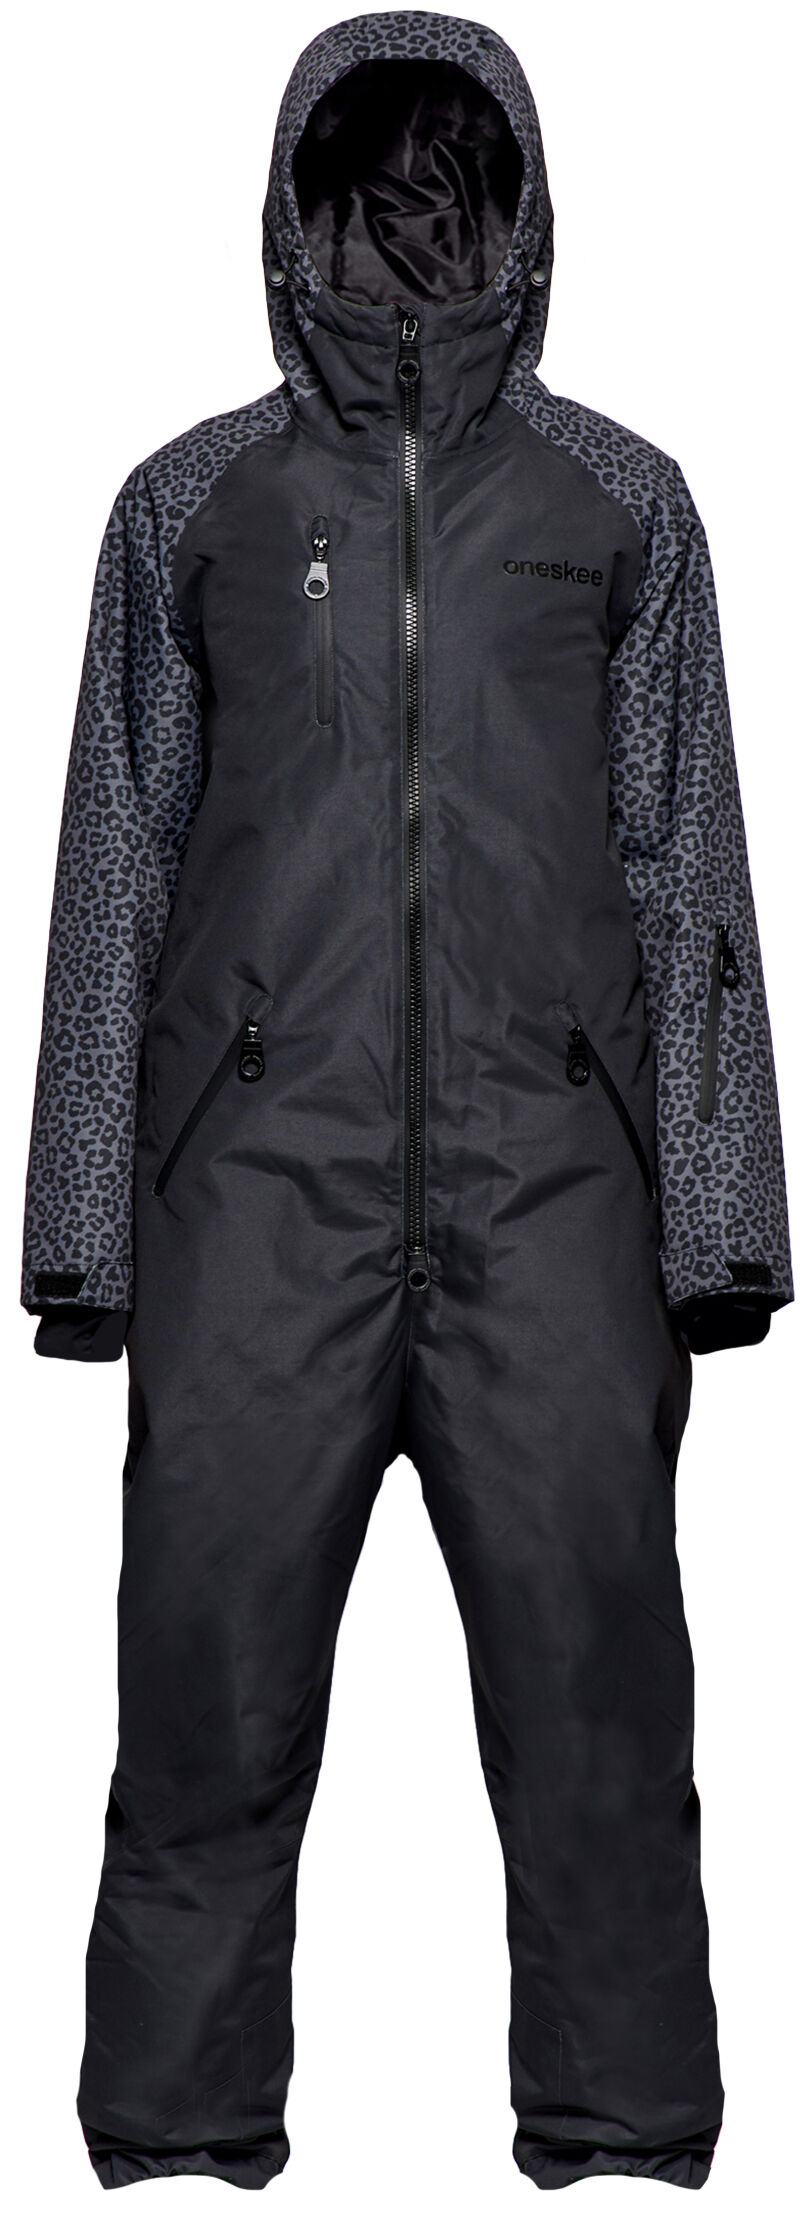 oneskee w original pro x suit black leopard m